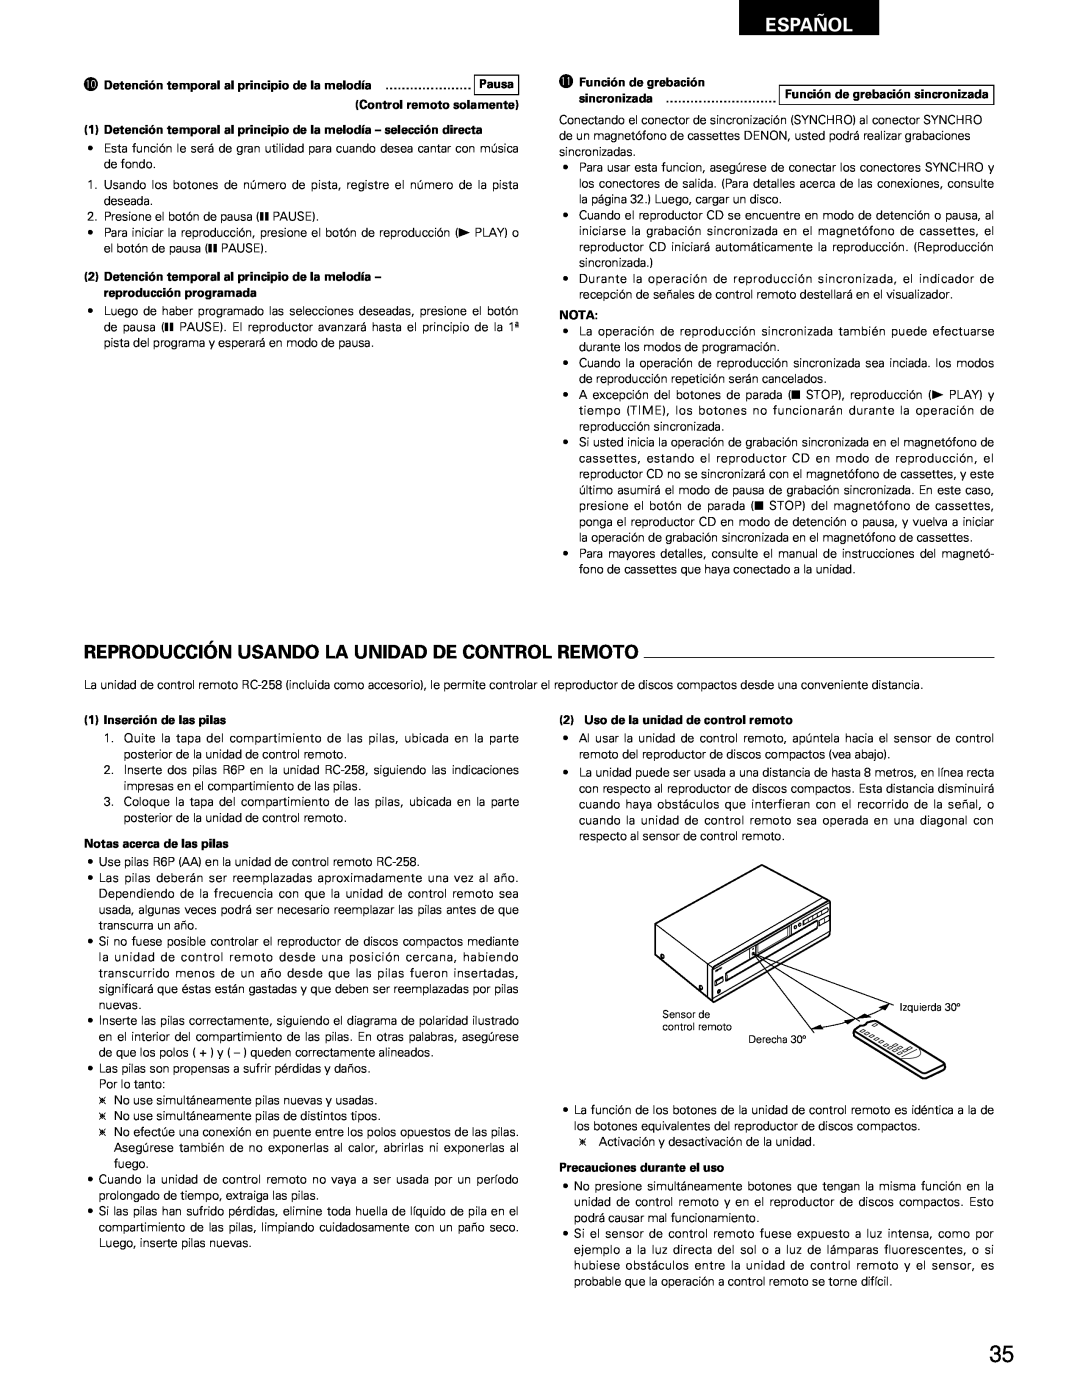 Denon DCM-65/35 manual Reproducción Usando La Unidad De Control Remoto, Español 